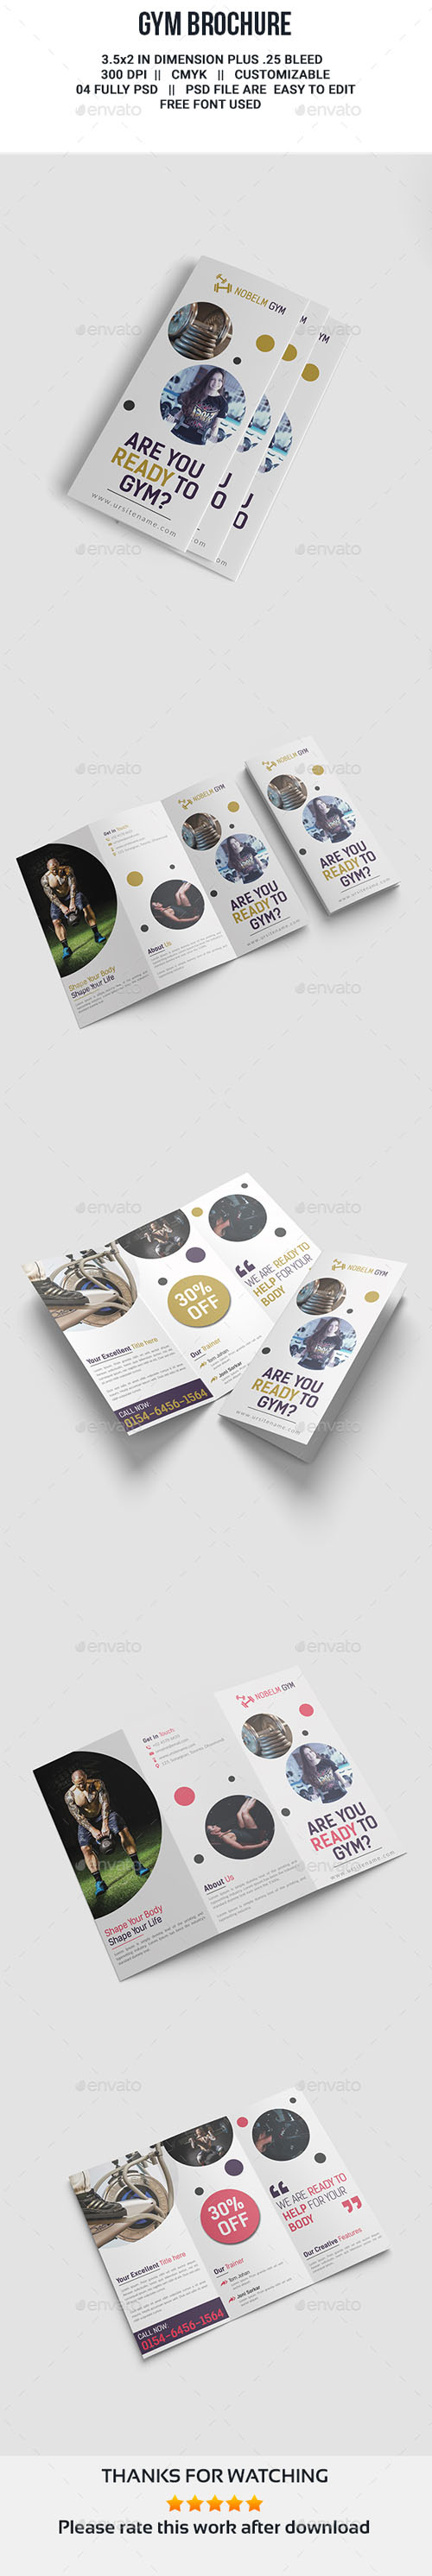 GR - Gym Tri-Fold Brochure 20905592